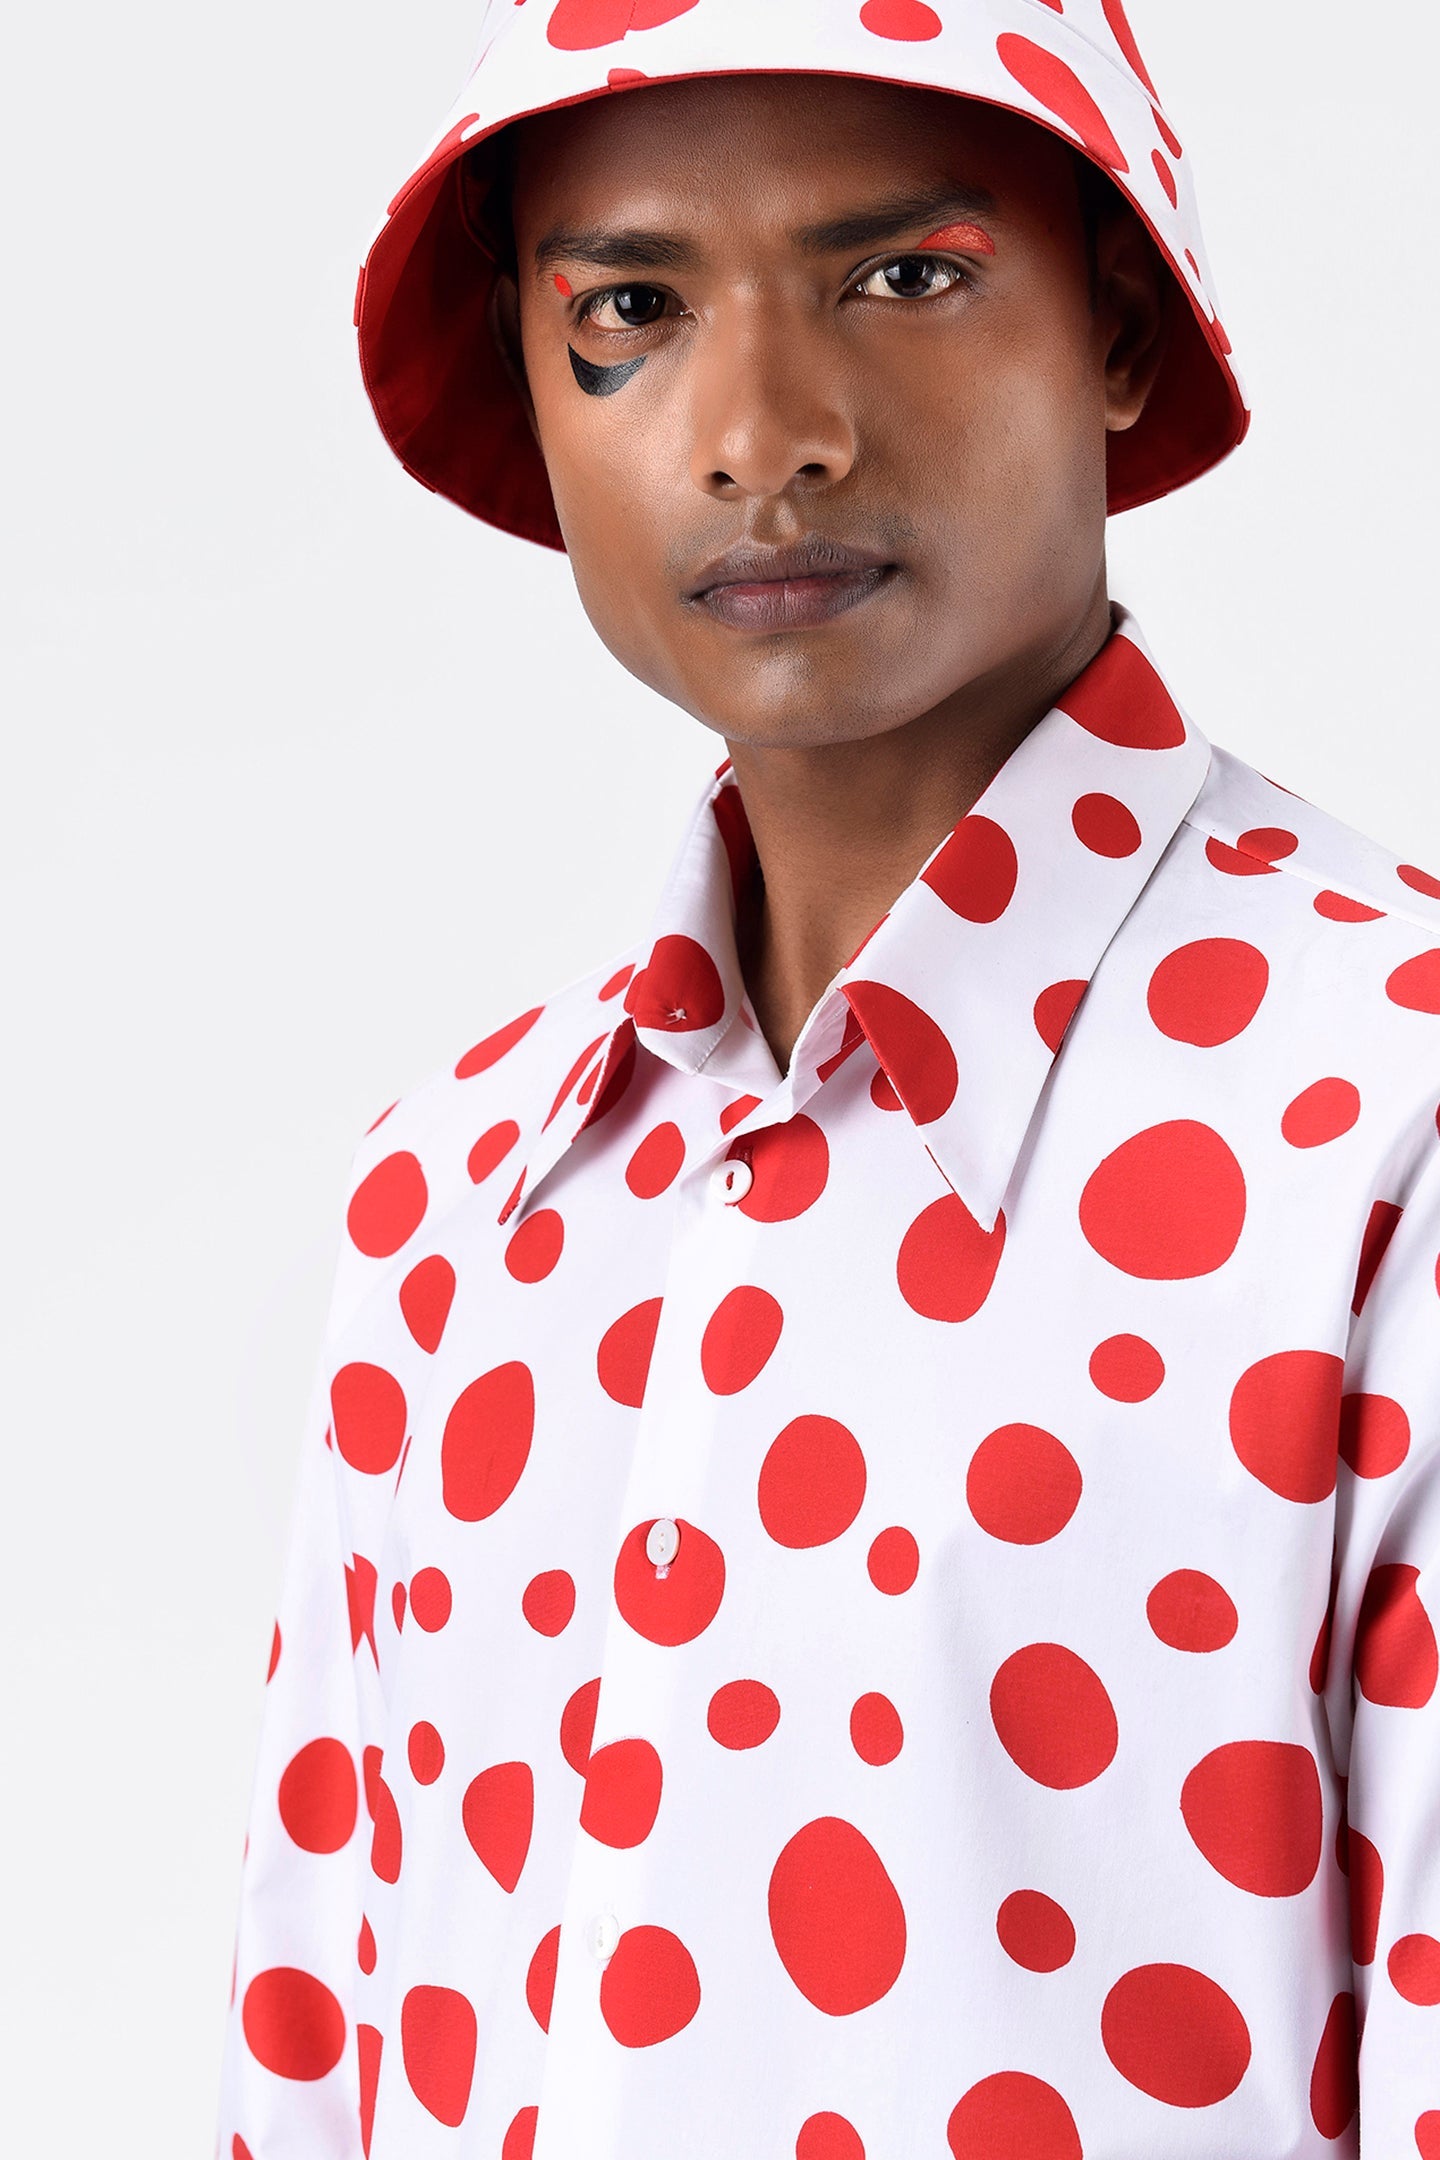 Polka Dots Printed Mens Shirt